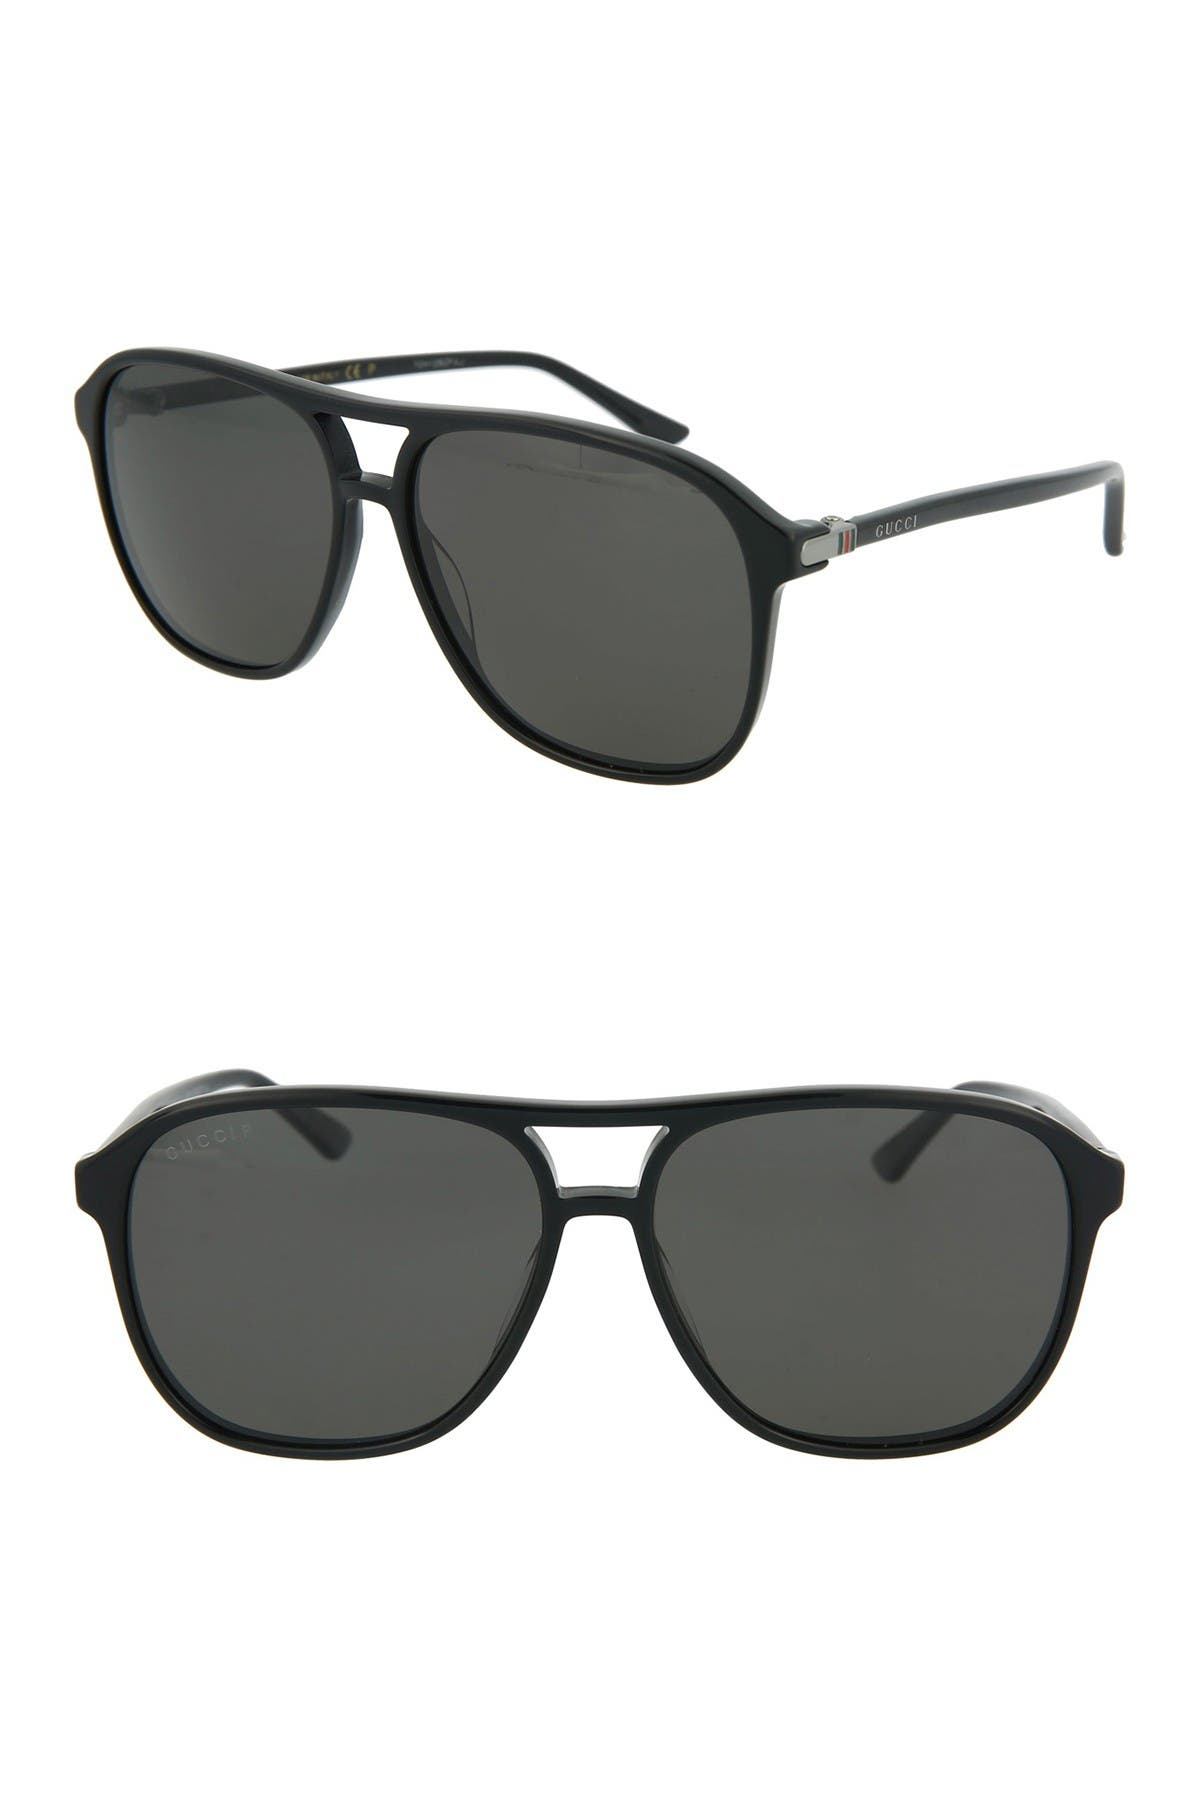 gucci 58mm square sunglasses